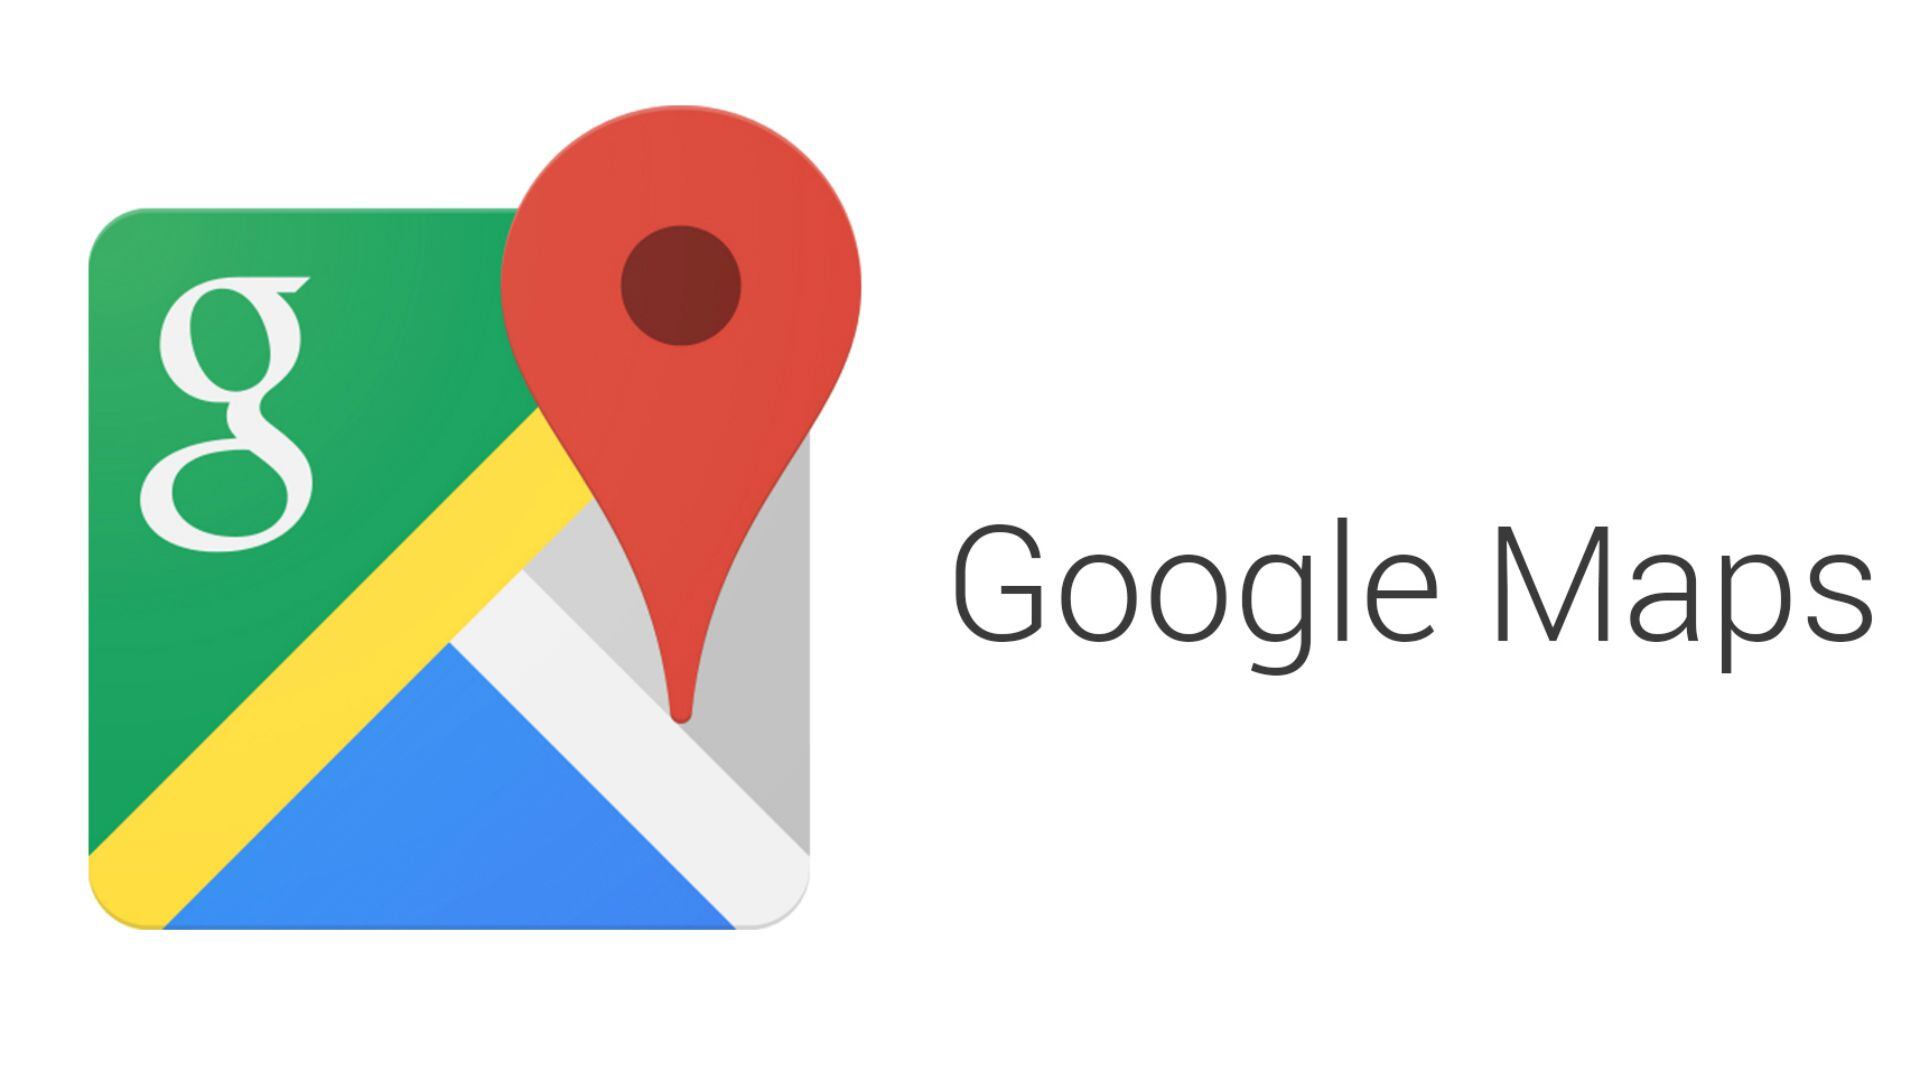 Los usuarios pueden usar los mapas sin conexión de Google Maps y navegar sin depender del Internet. (Google)